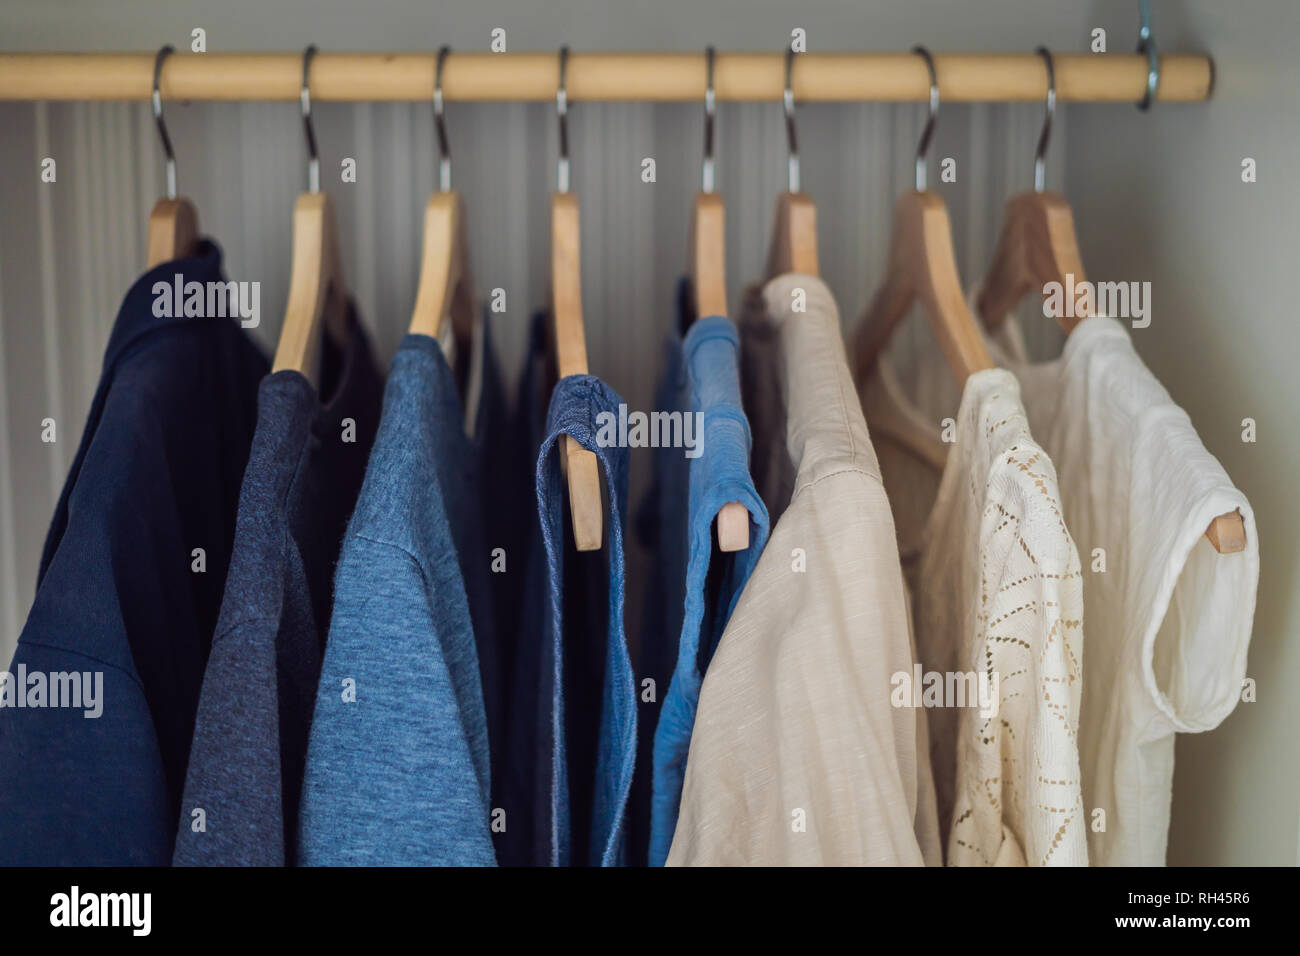 Kleidung auf Kleiderbügel im Schrank Farbverlauf von Weiß bis Dunkelblau  Stockfotografie - Alamy